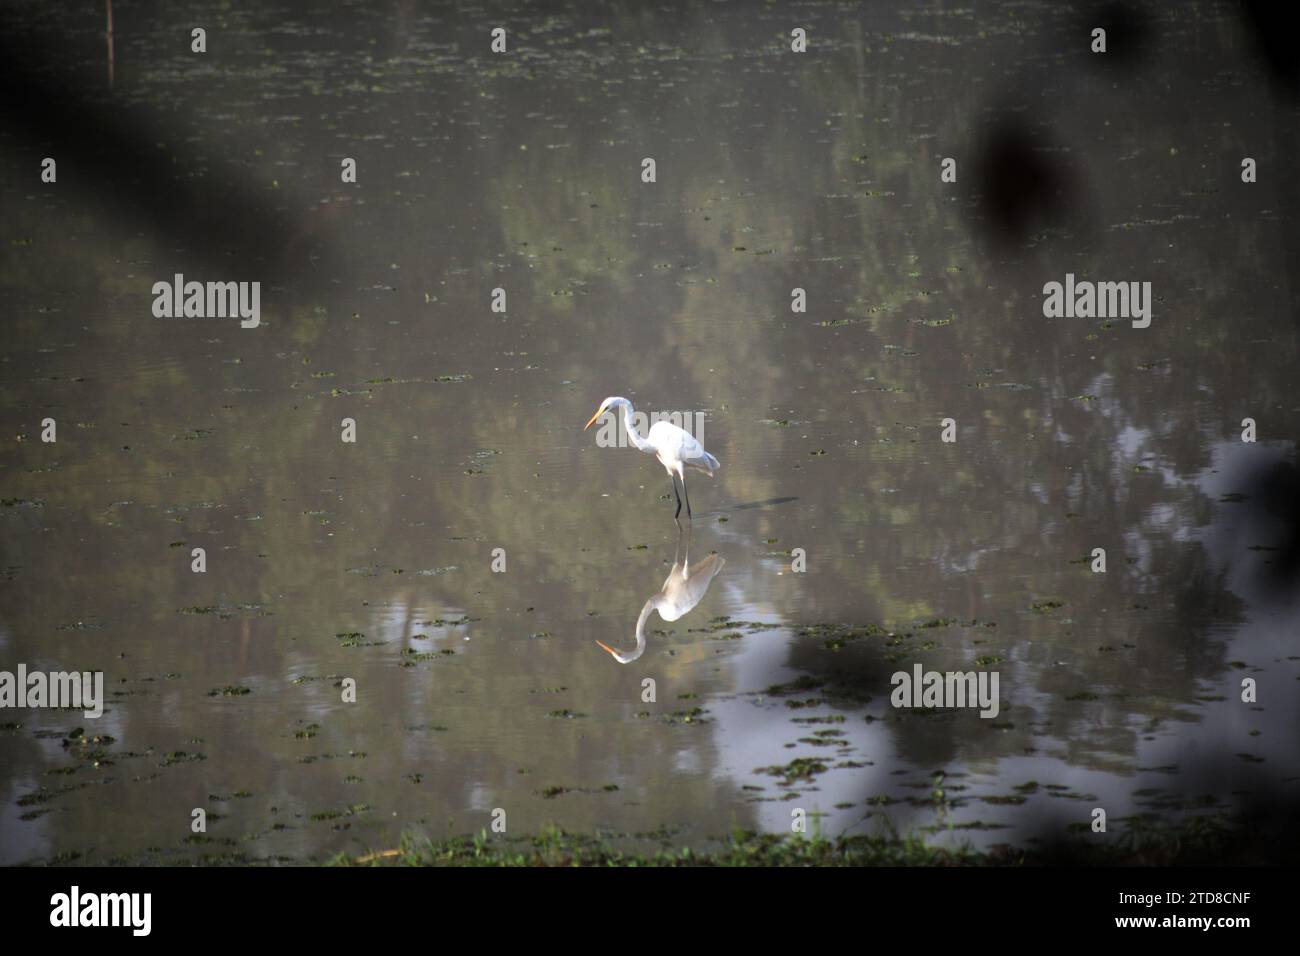 Bangladesh narayanganj janvier 01,2000.oiseaux de héron blanc au bangladesh.Nazmul islam/alamy Live news Banque D'Images